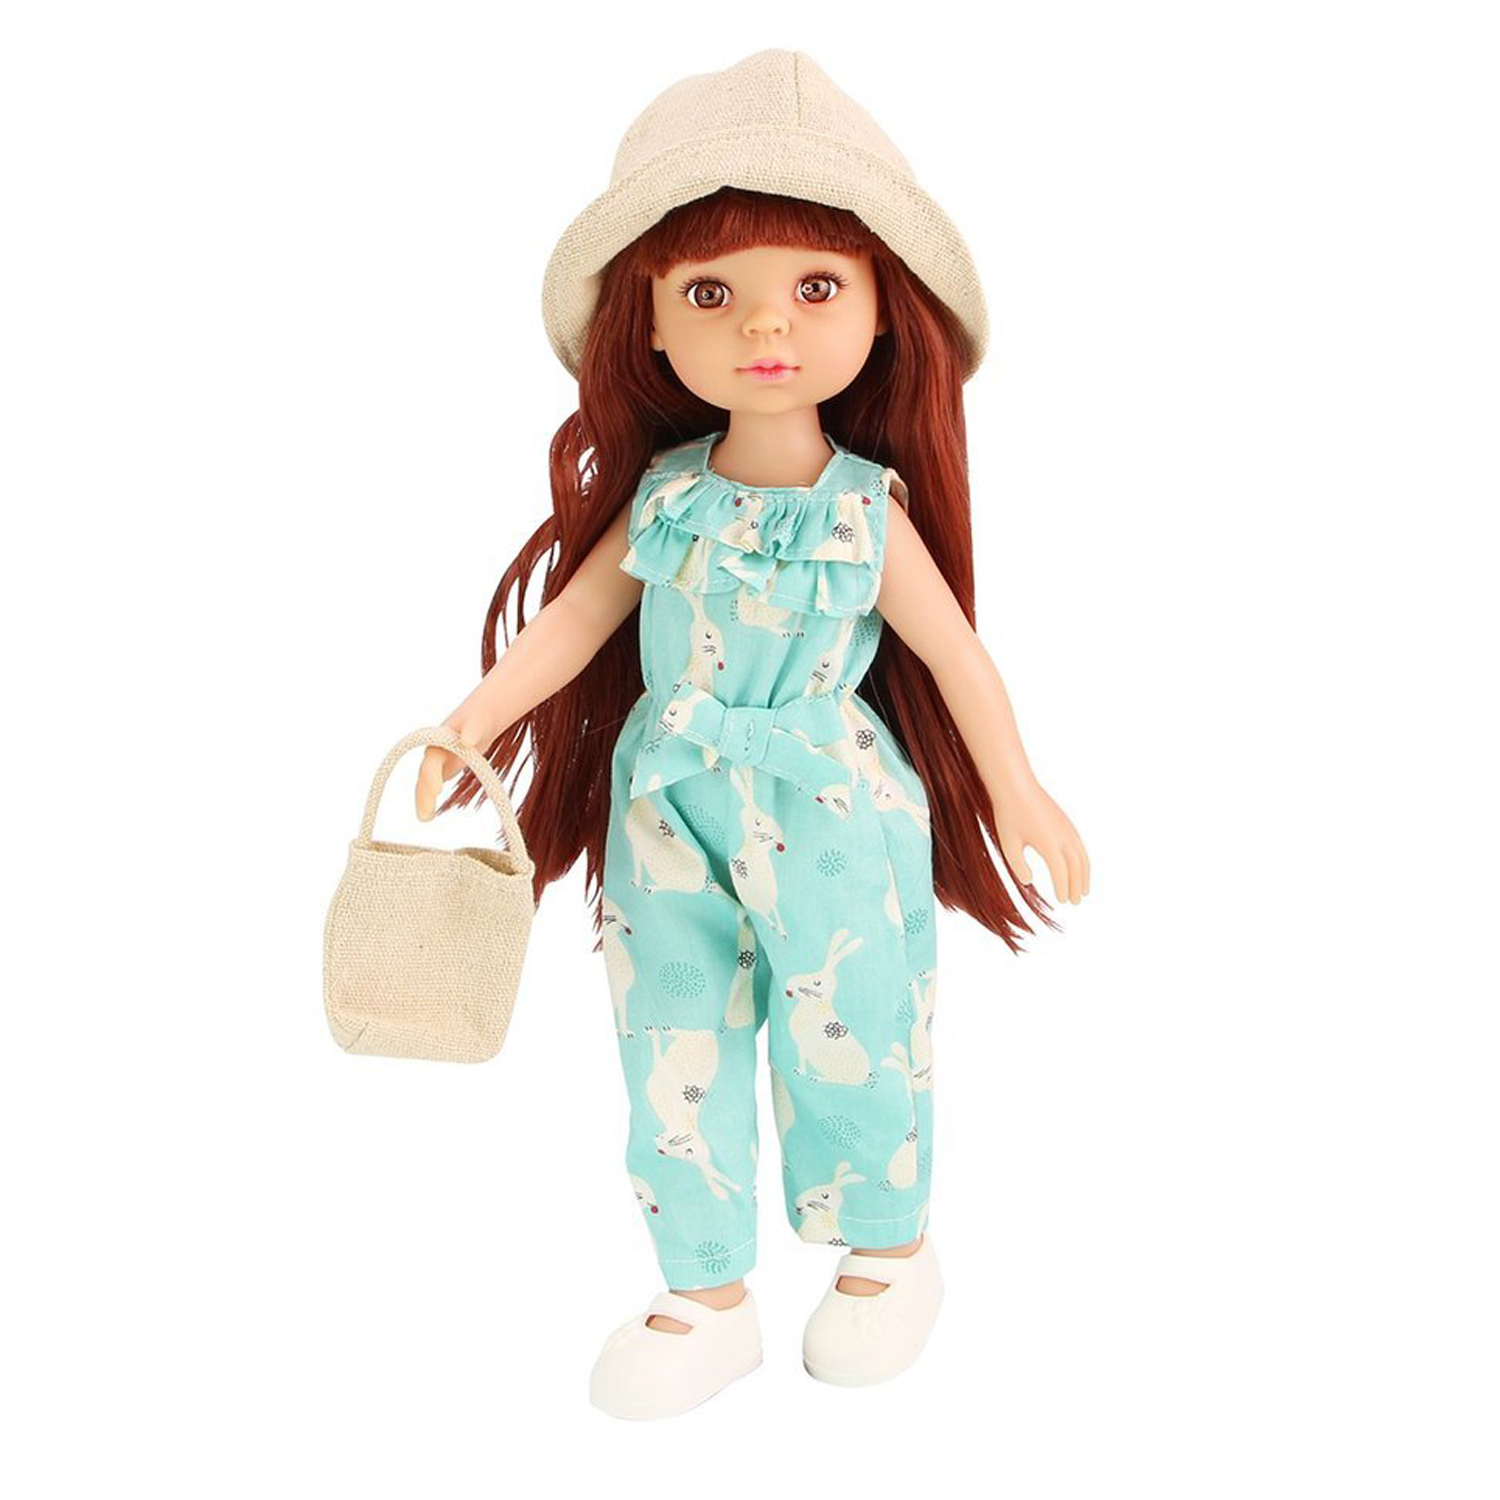 Модная кукла Funky Toys Дженни, 33 см, , FT0696183 модная одежда своими руками сшей наряд за 1 вечер